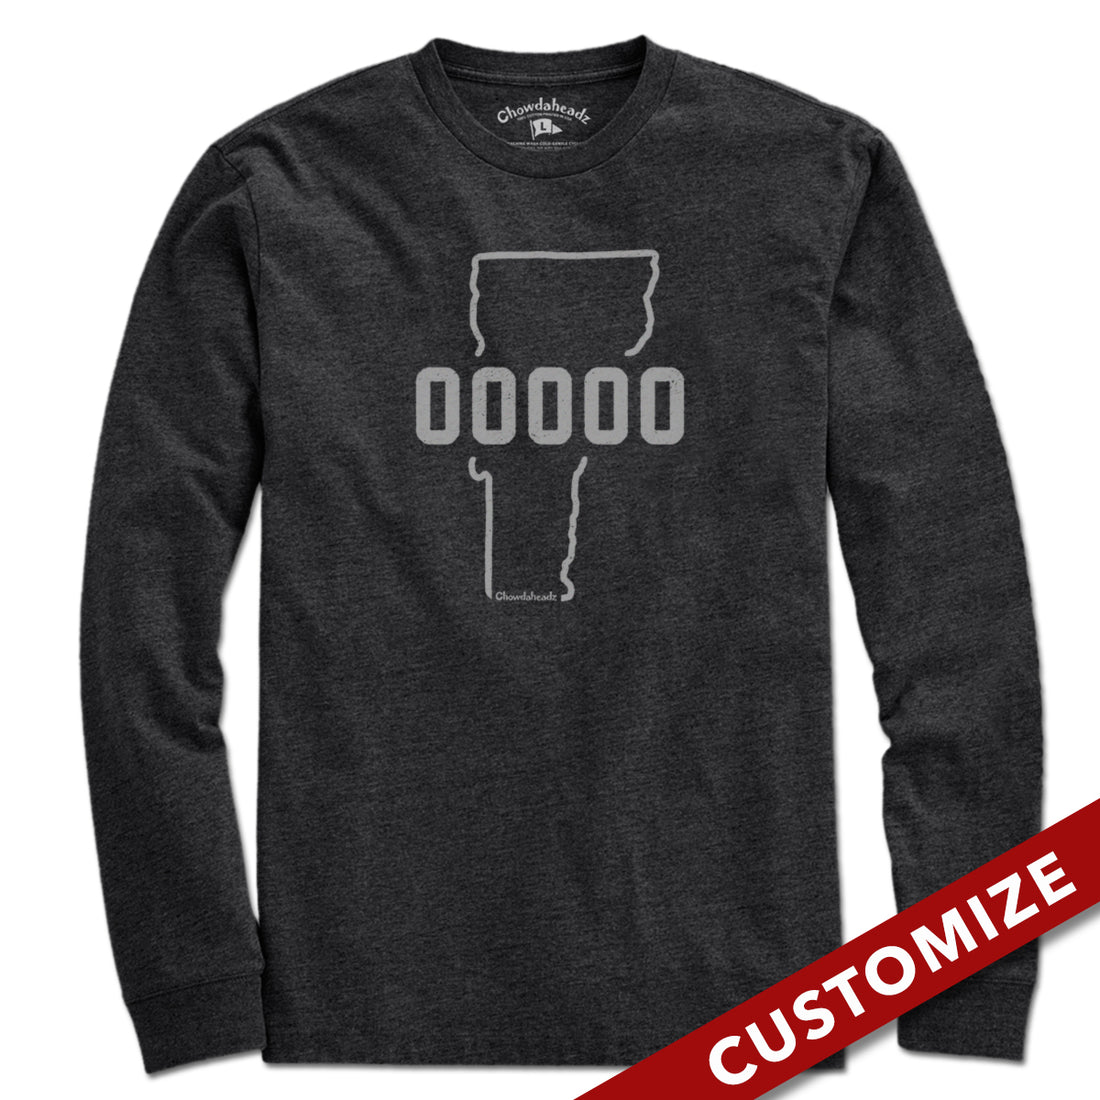 Custom Vermont Zip Code T-Shirt - Chowdaheadz